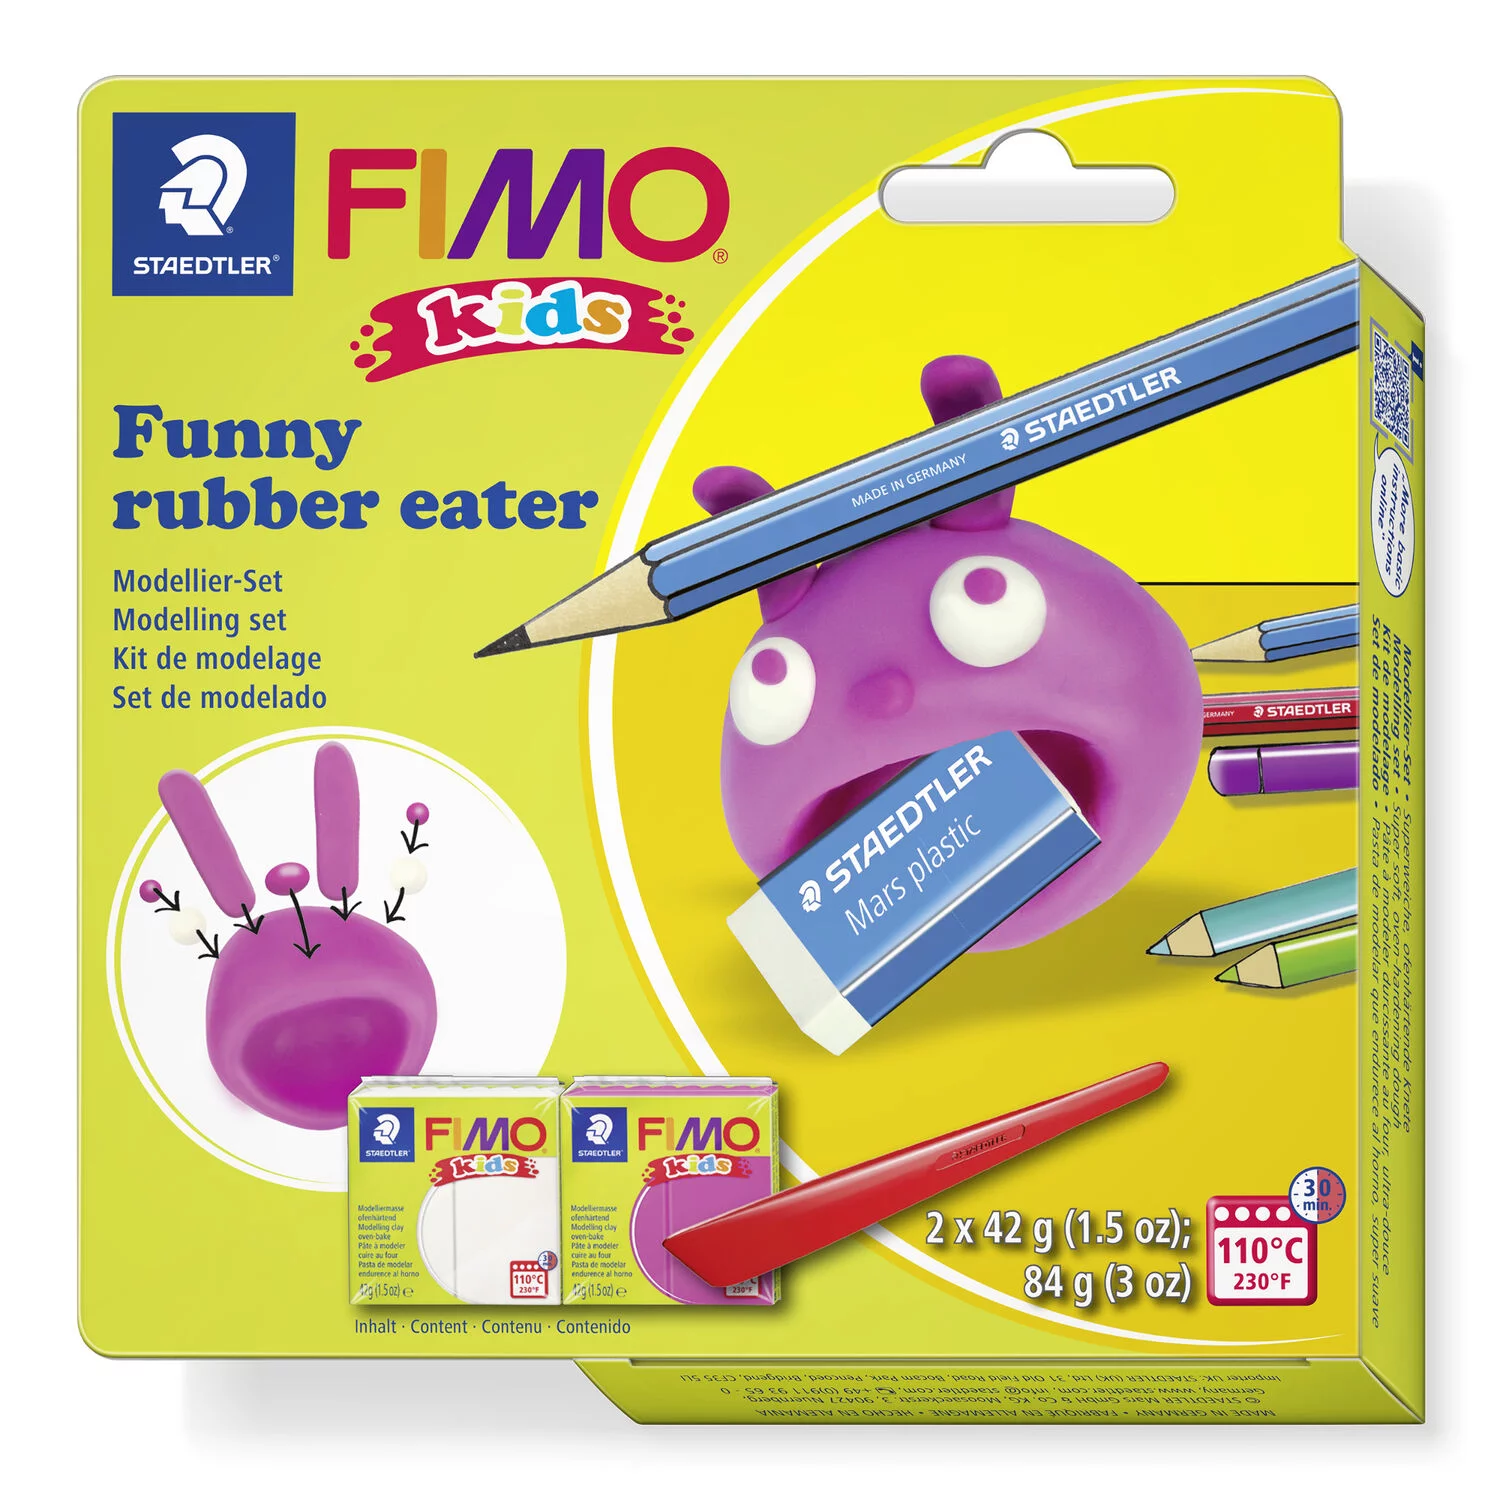 STAEDTLER 8035 23 - Fimo kids Set FUNNY rubber eater - ofenhärtende Modelliermasse, 2x42g